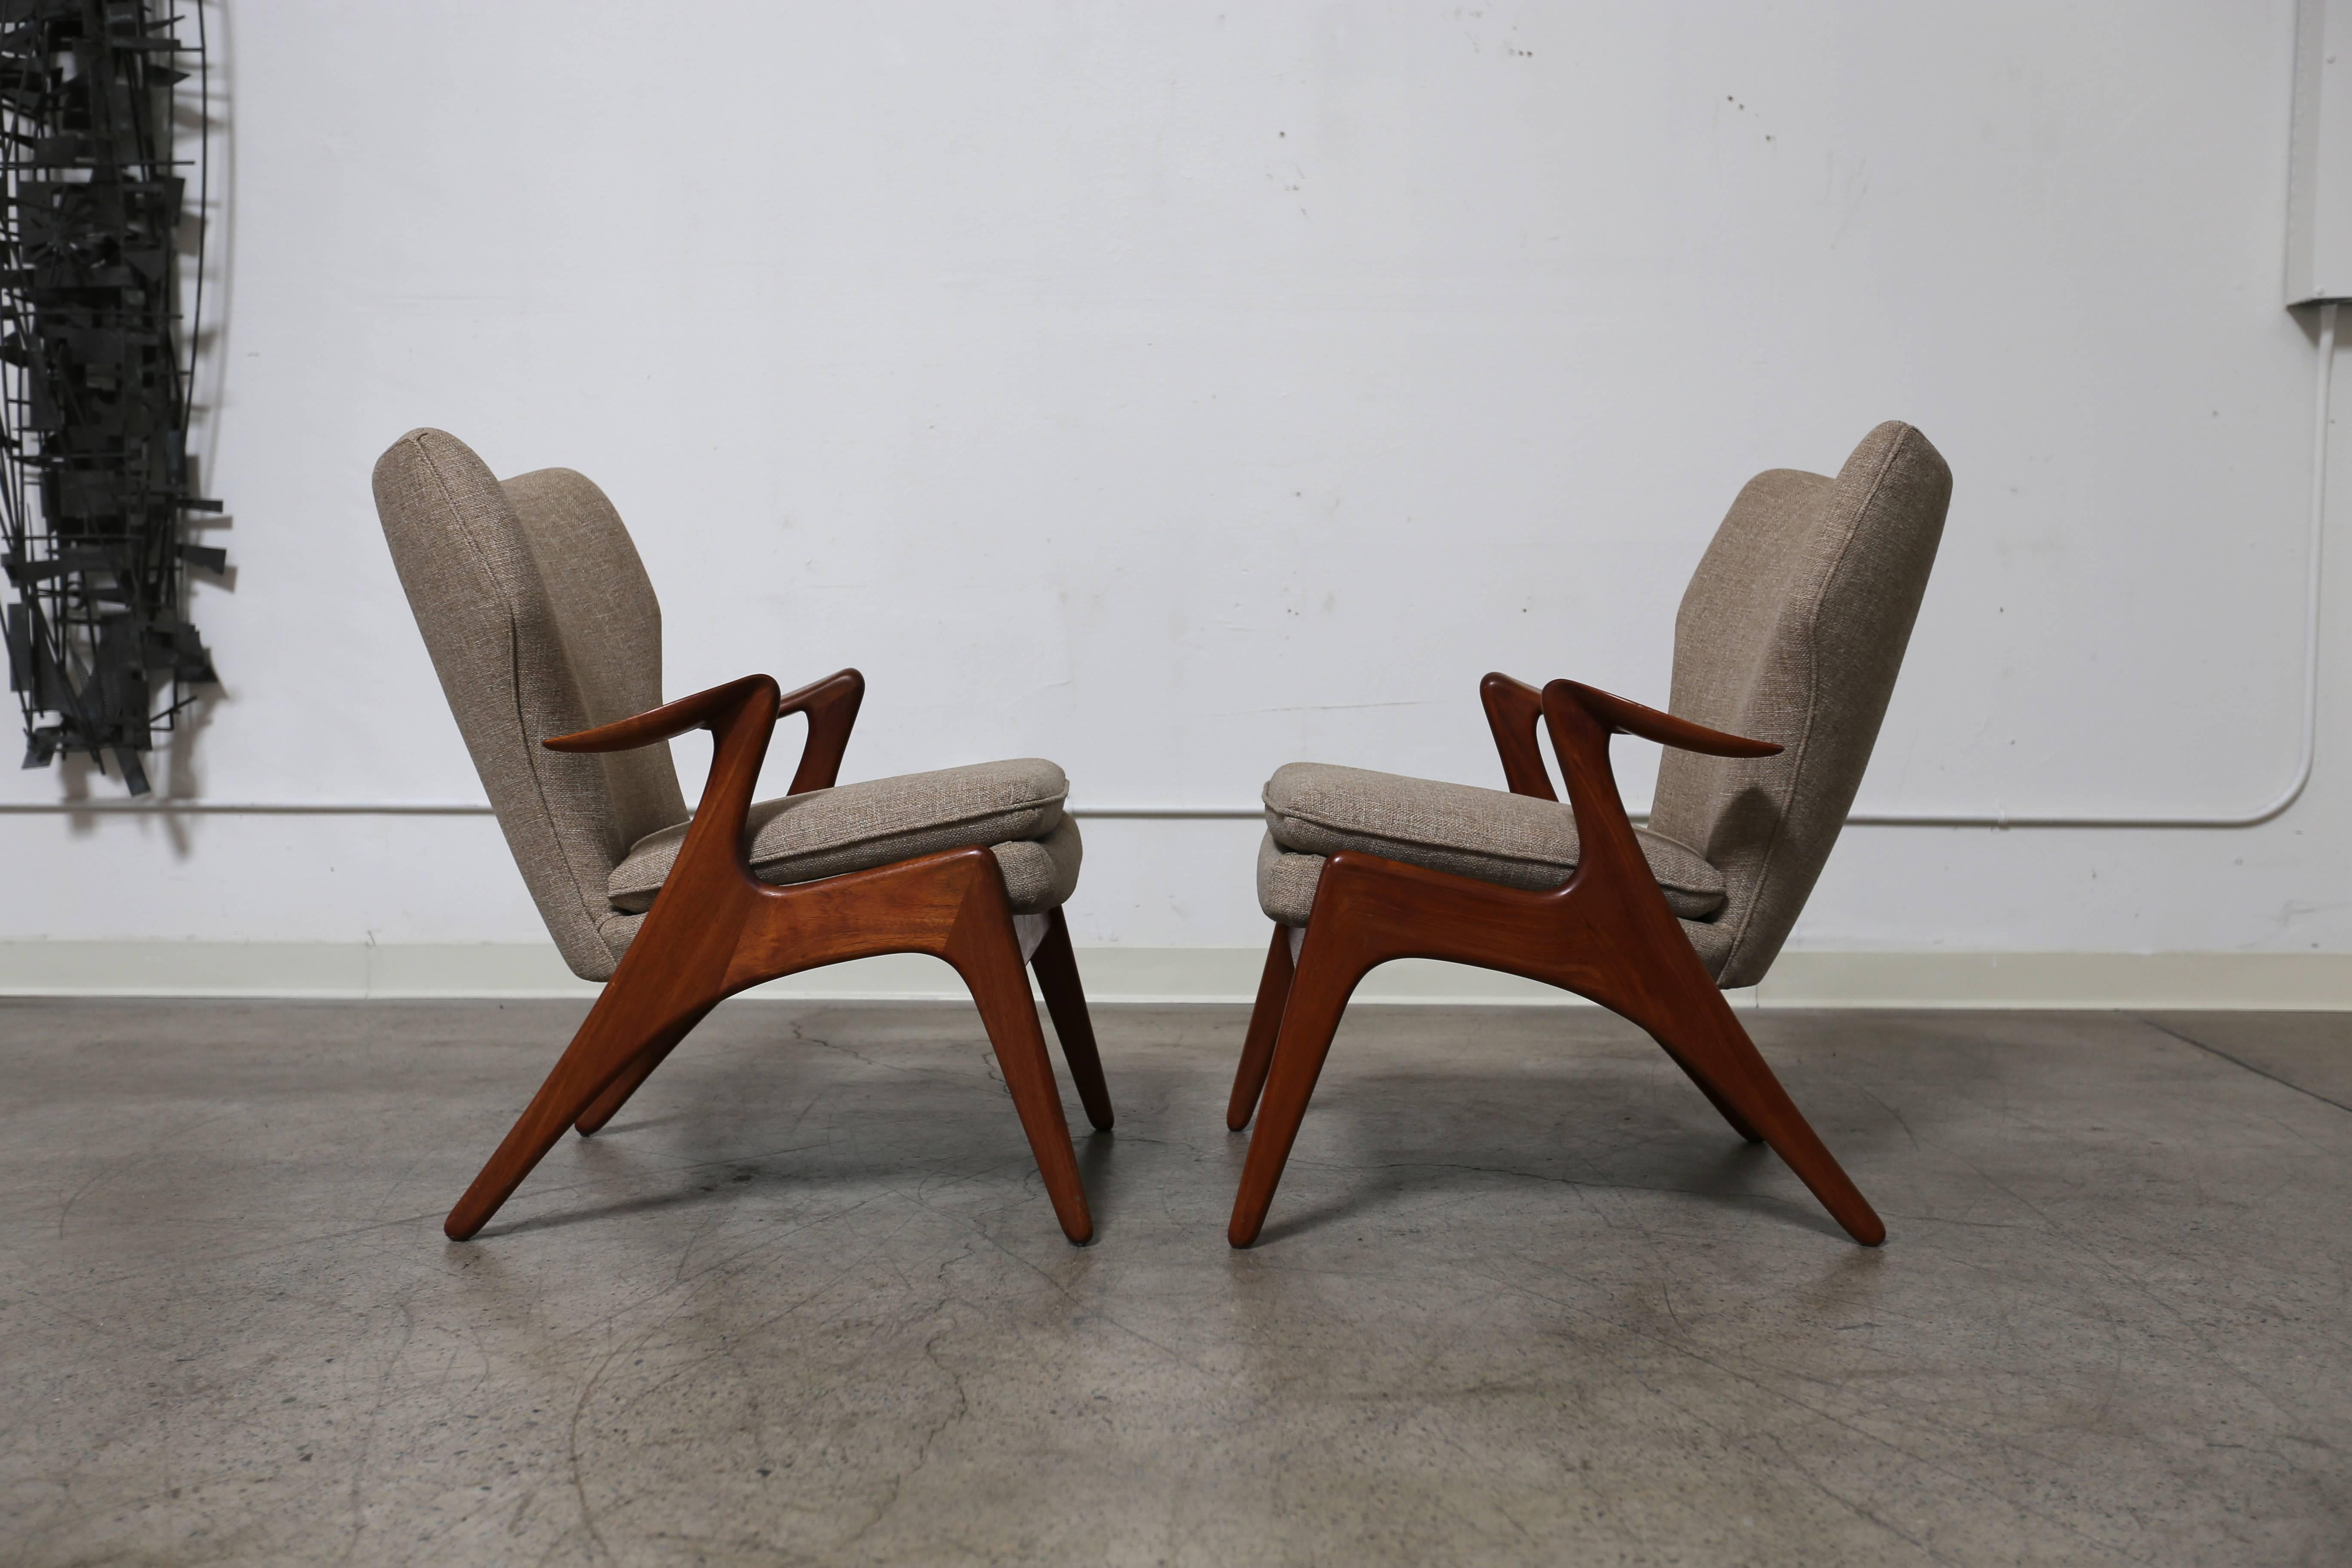 Scandinavian Modern Pair of sculptural teak lounge chairs by Glostrup Mobelfabrik